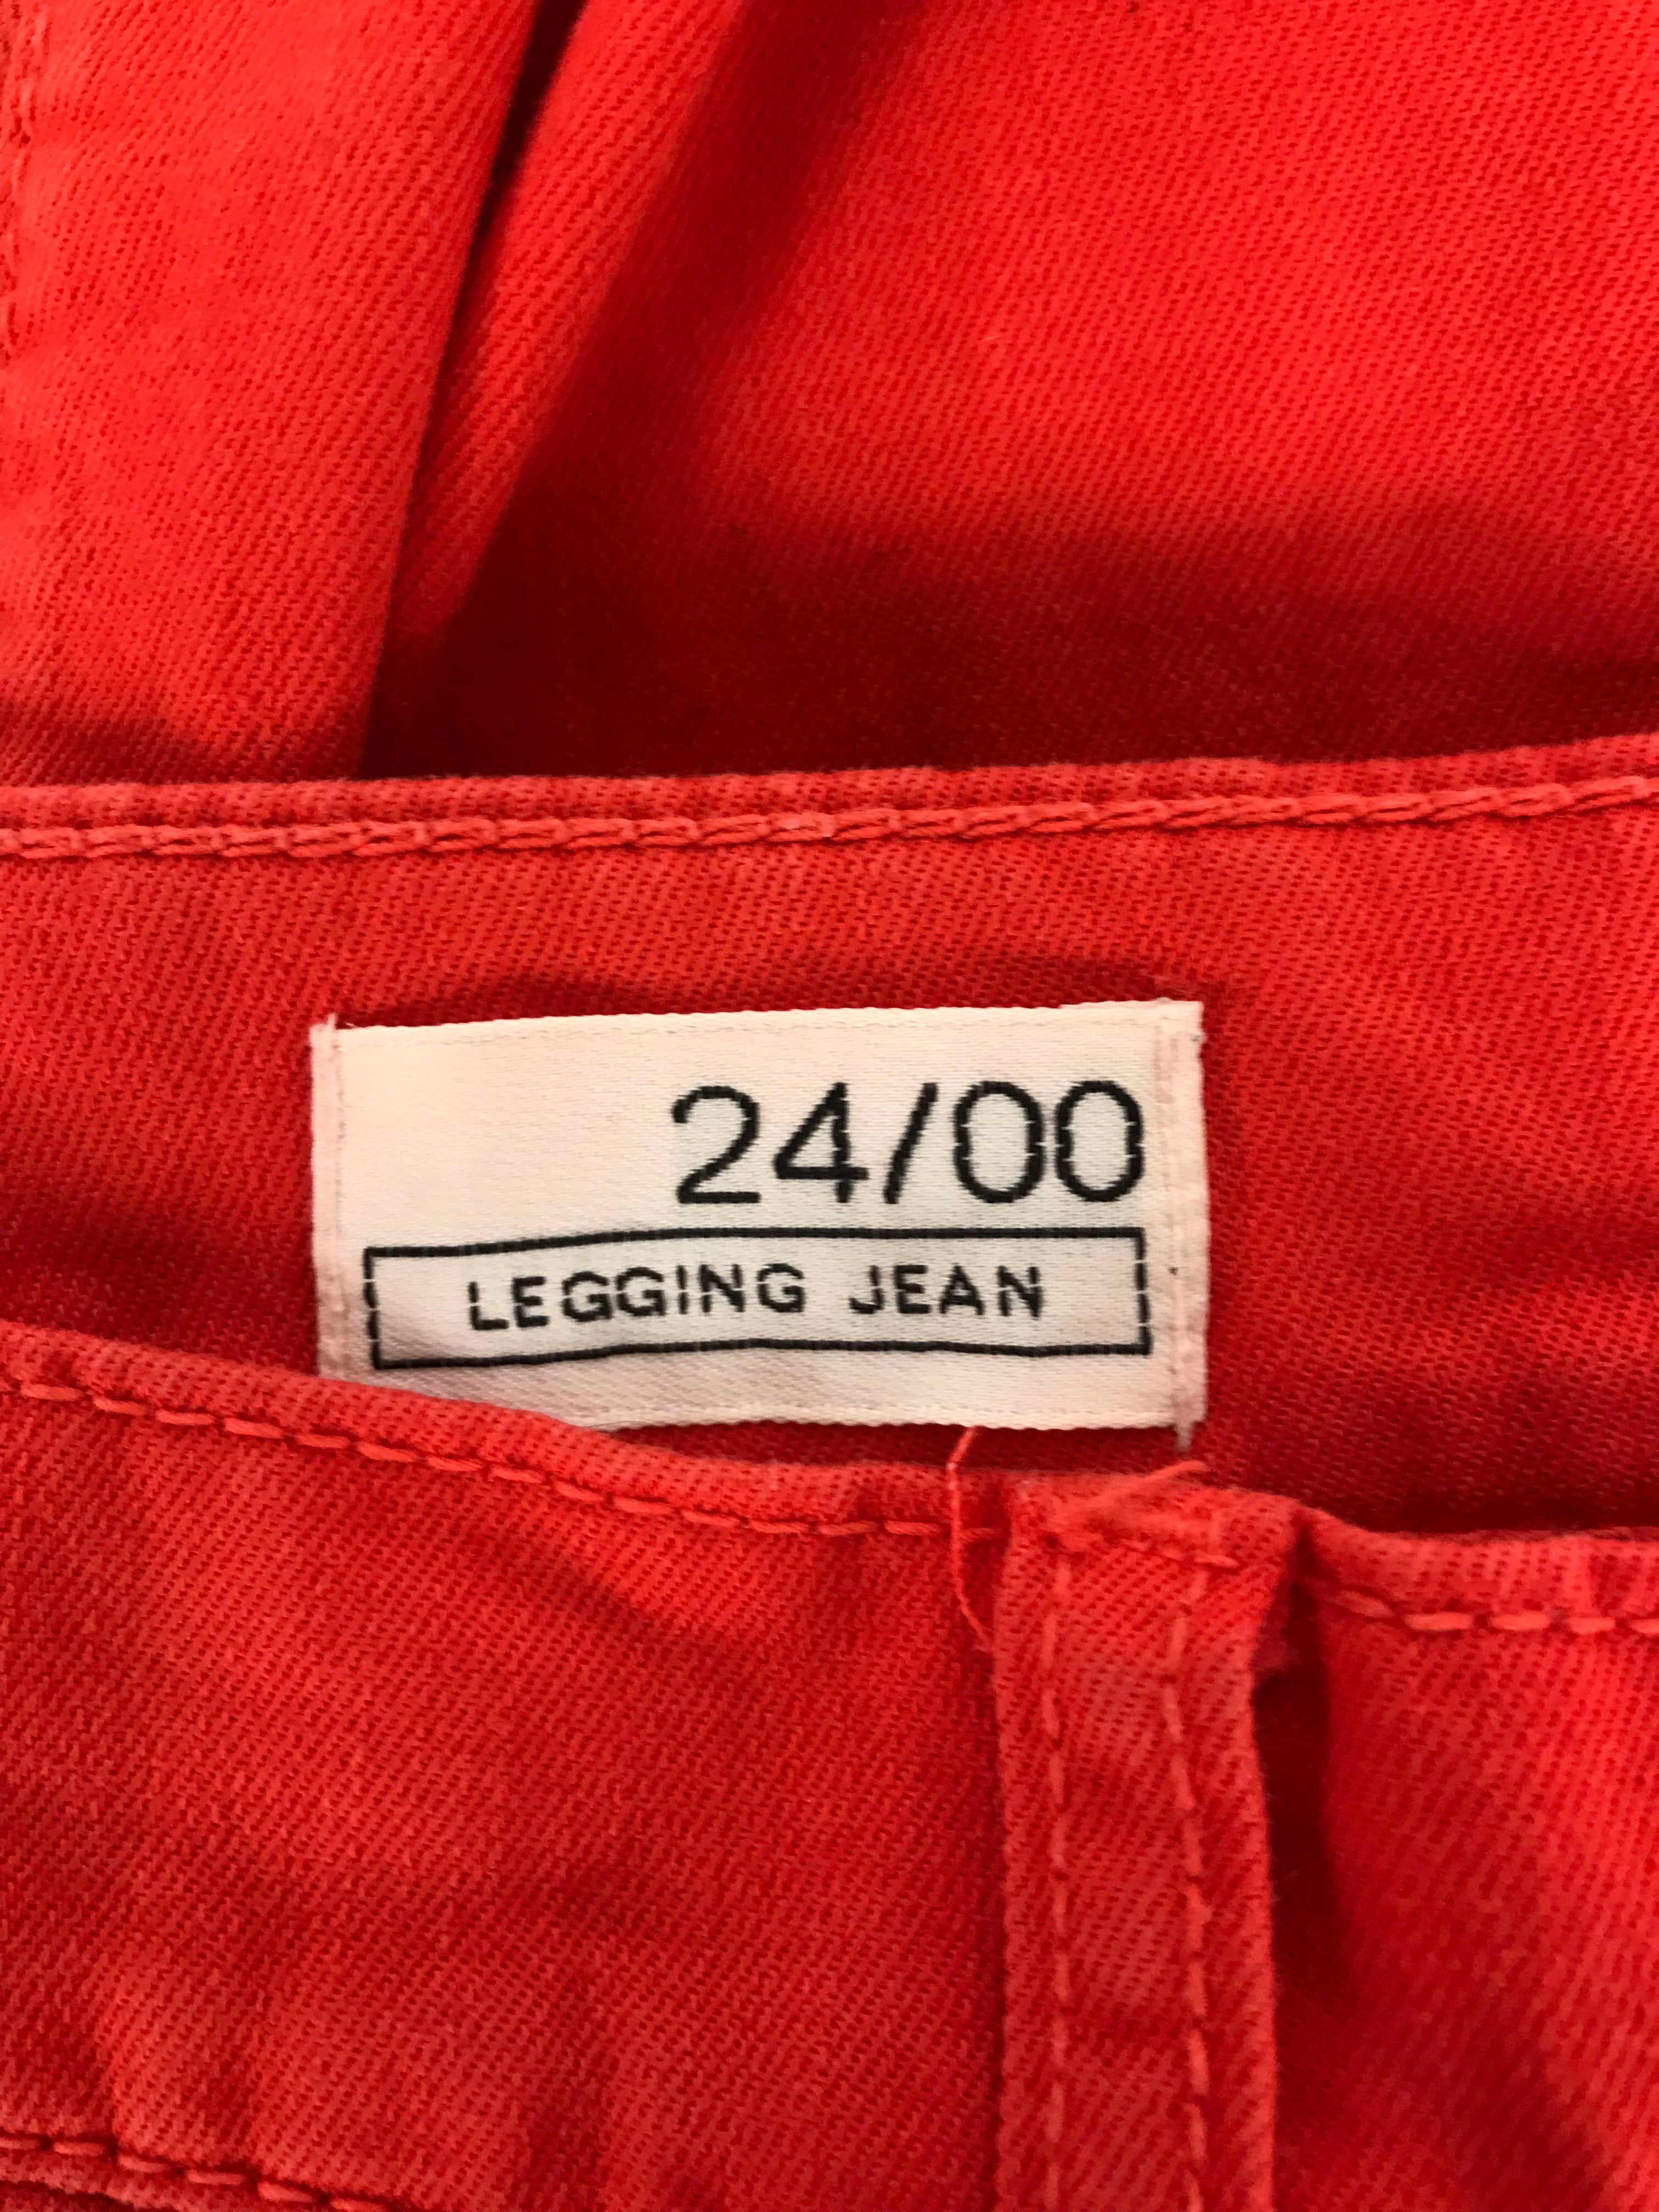 Gap 1969 Legging Jean Women's Size 24/00